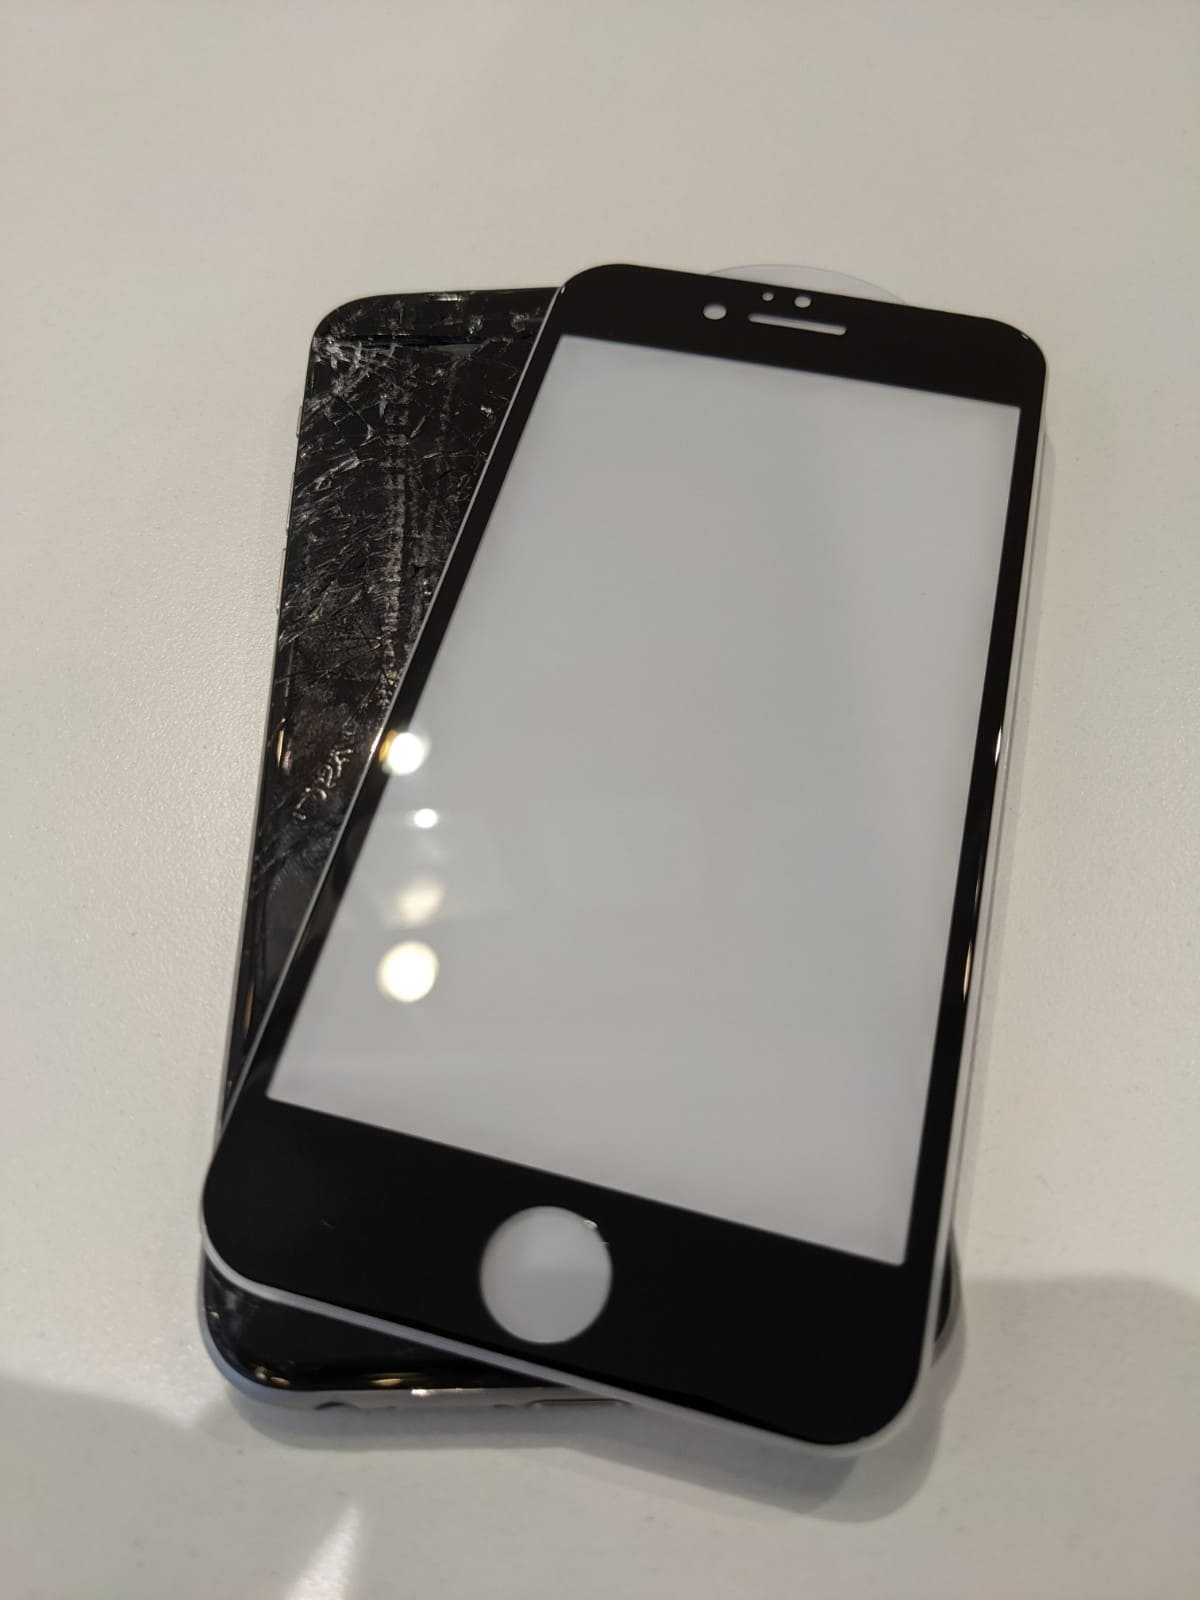 Iphoneのガラスが割れた 応急処置の方法 Iphone修理ダイワンテレコム